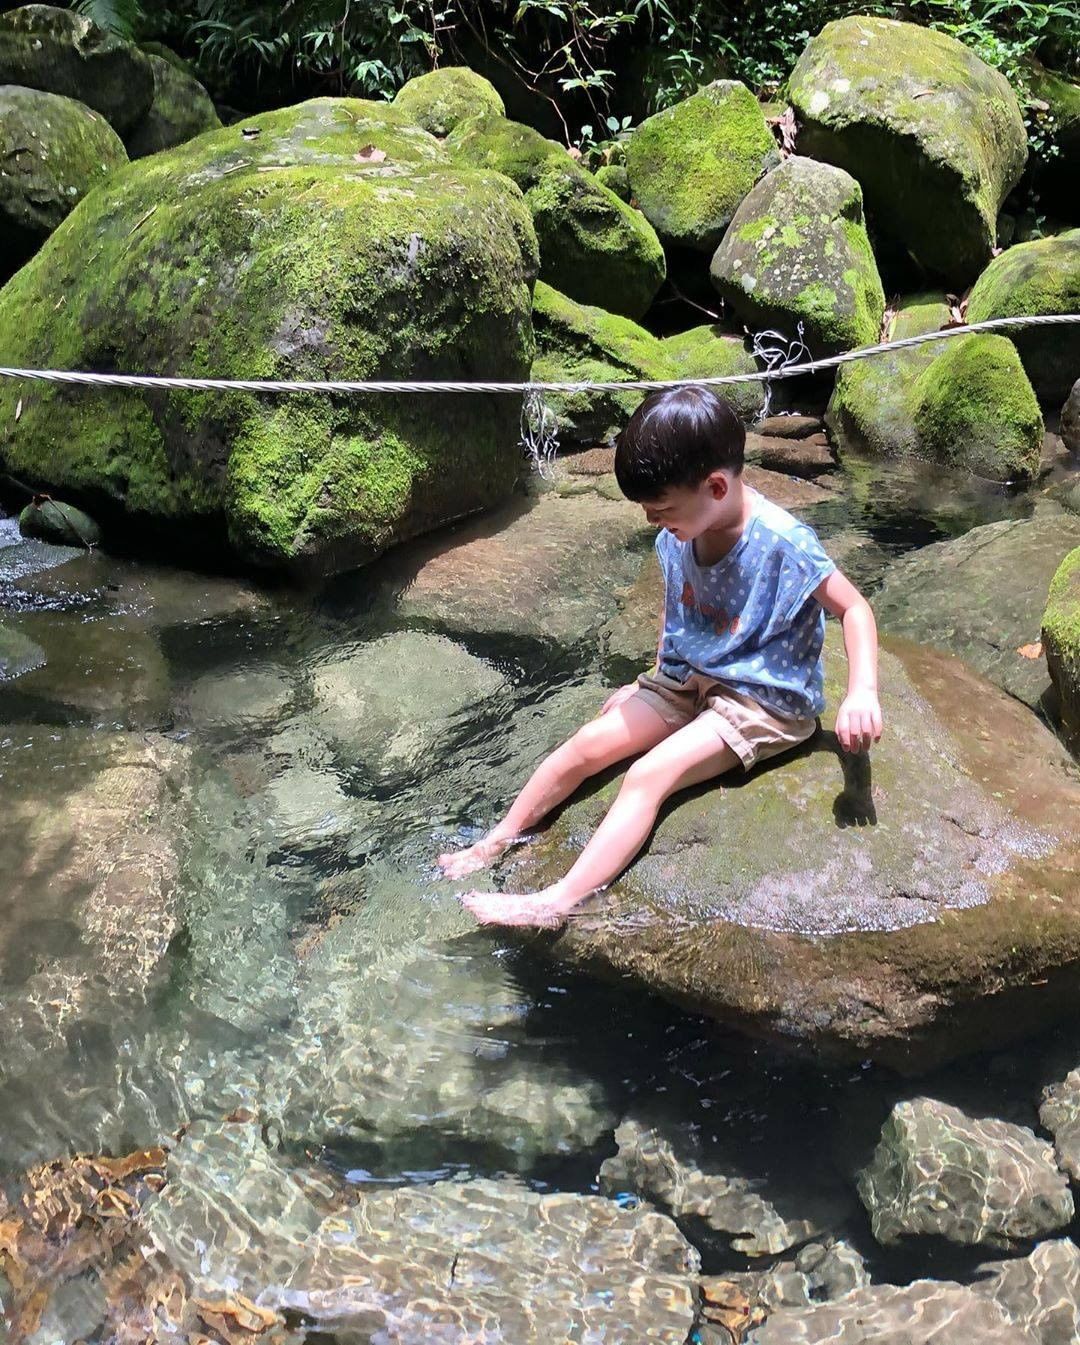 週一就是要看看清涼溪水+可愛小弟弟幻想自己也在山中度假-⠀⠀⠀⠀⠀⠀⠀⠀⠀⠀⠀感謝 @annashia.tw  分享的美照-⠀⠀⠀...